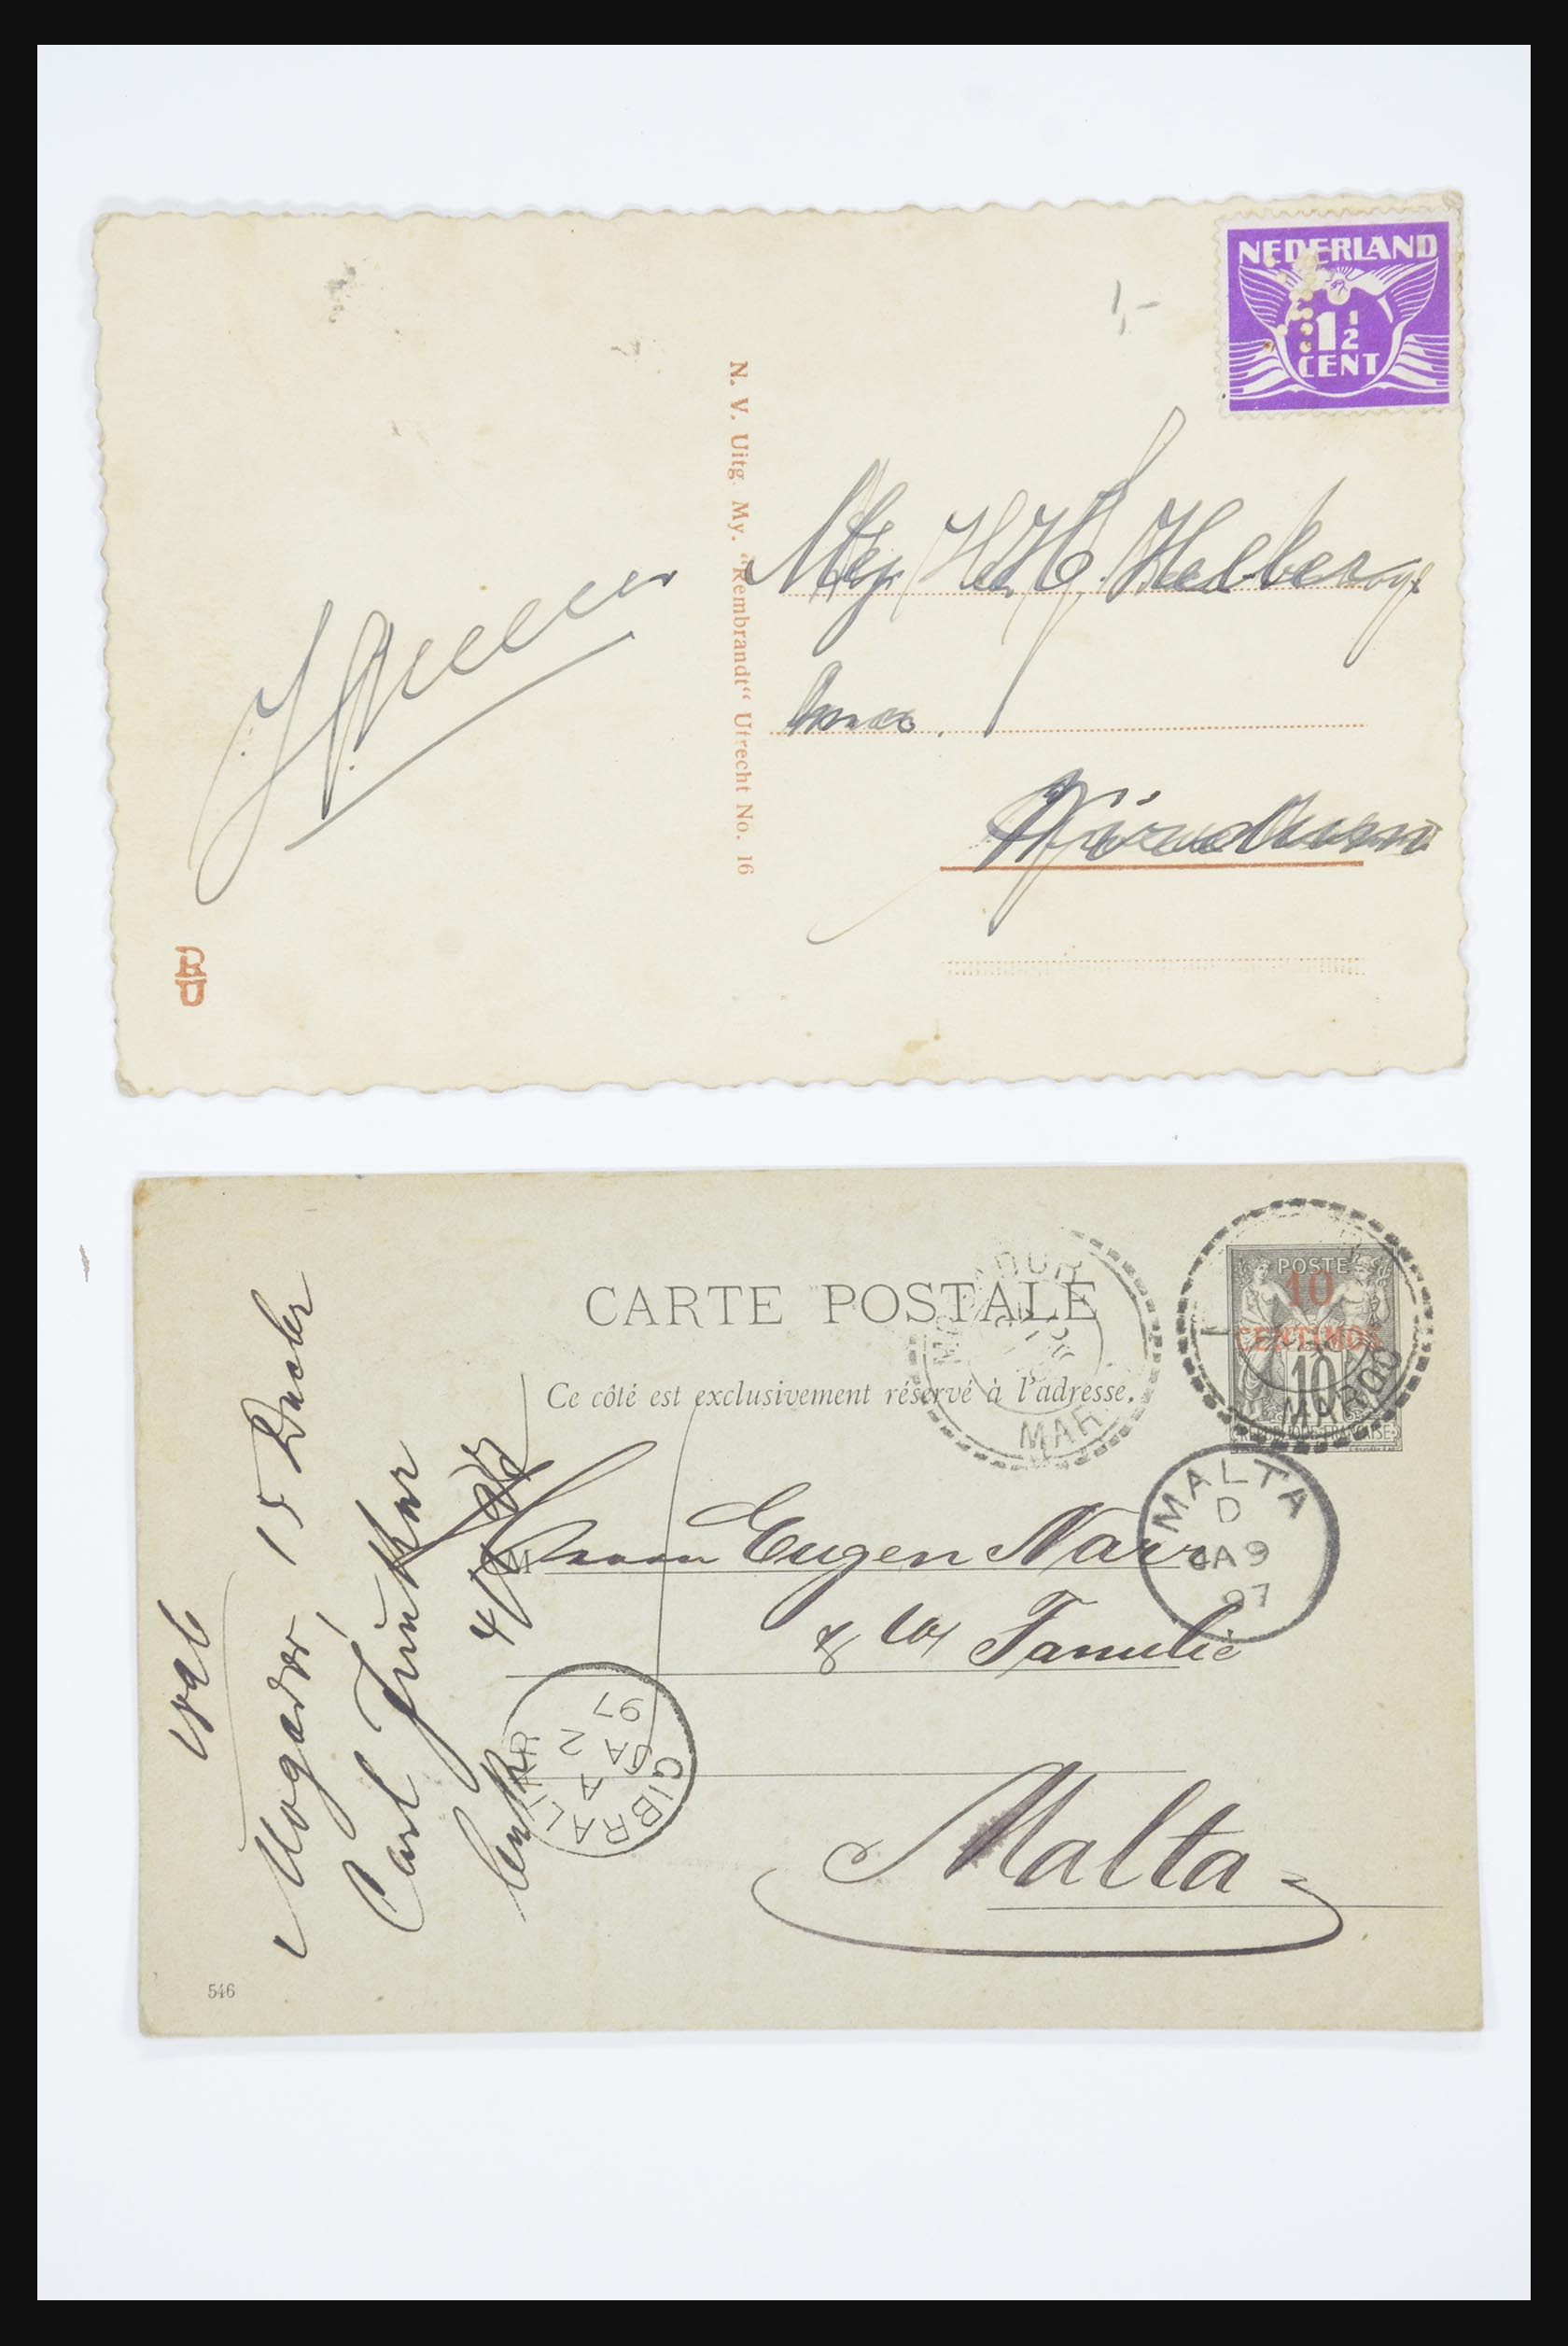 31668 016 - 31668 Nederland ansichtkaarten 1905-1935.